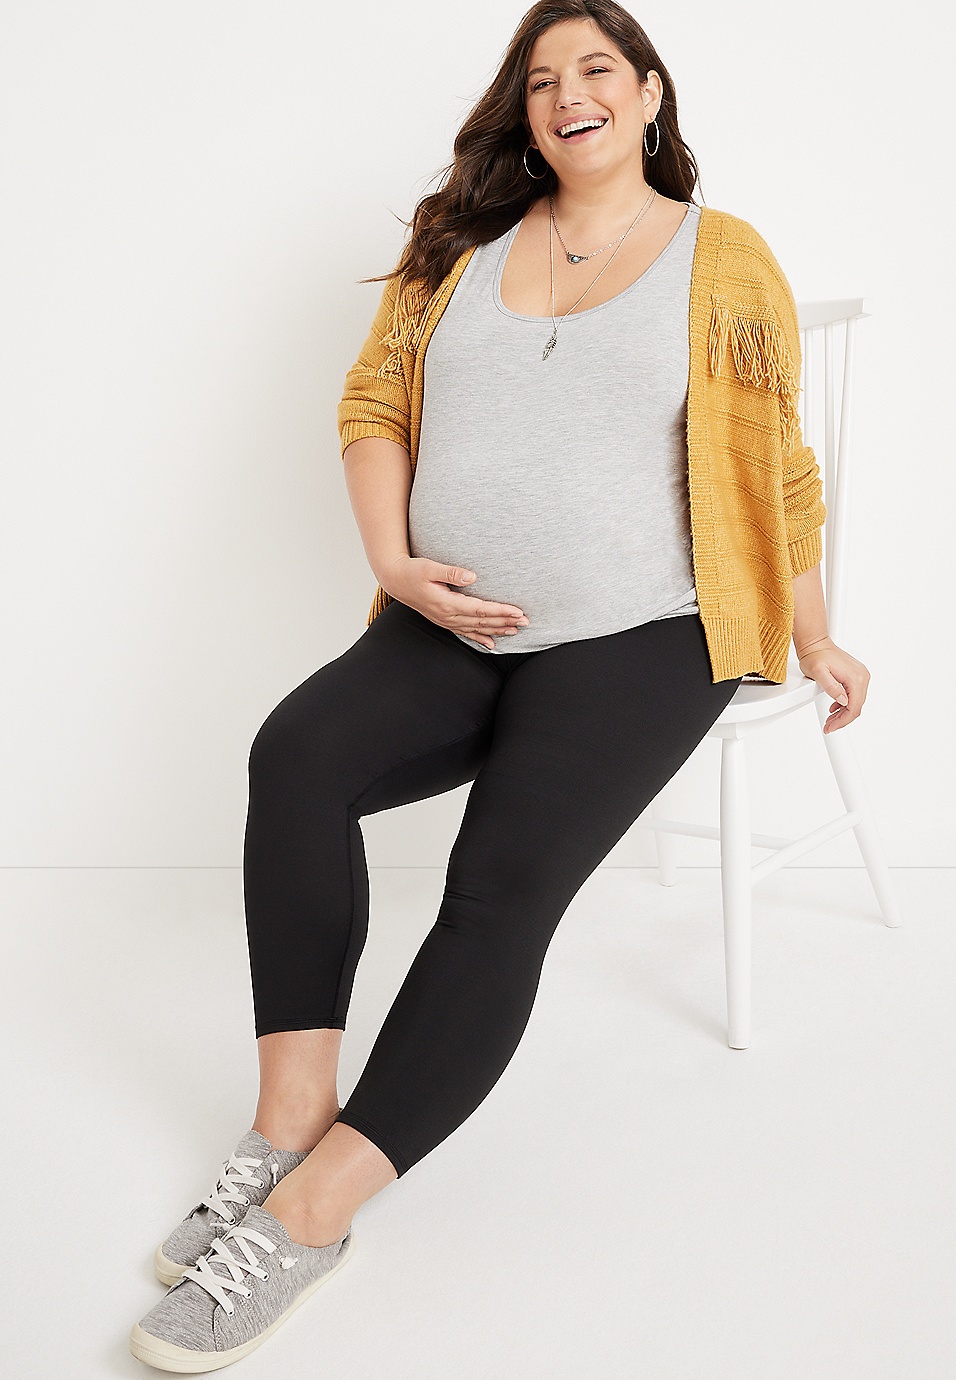 PLUS Size Maternity Leggings, Full Length, Navy & Grey